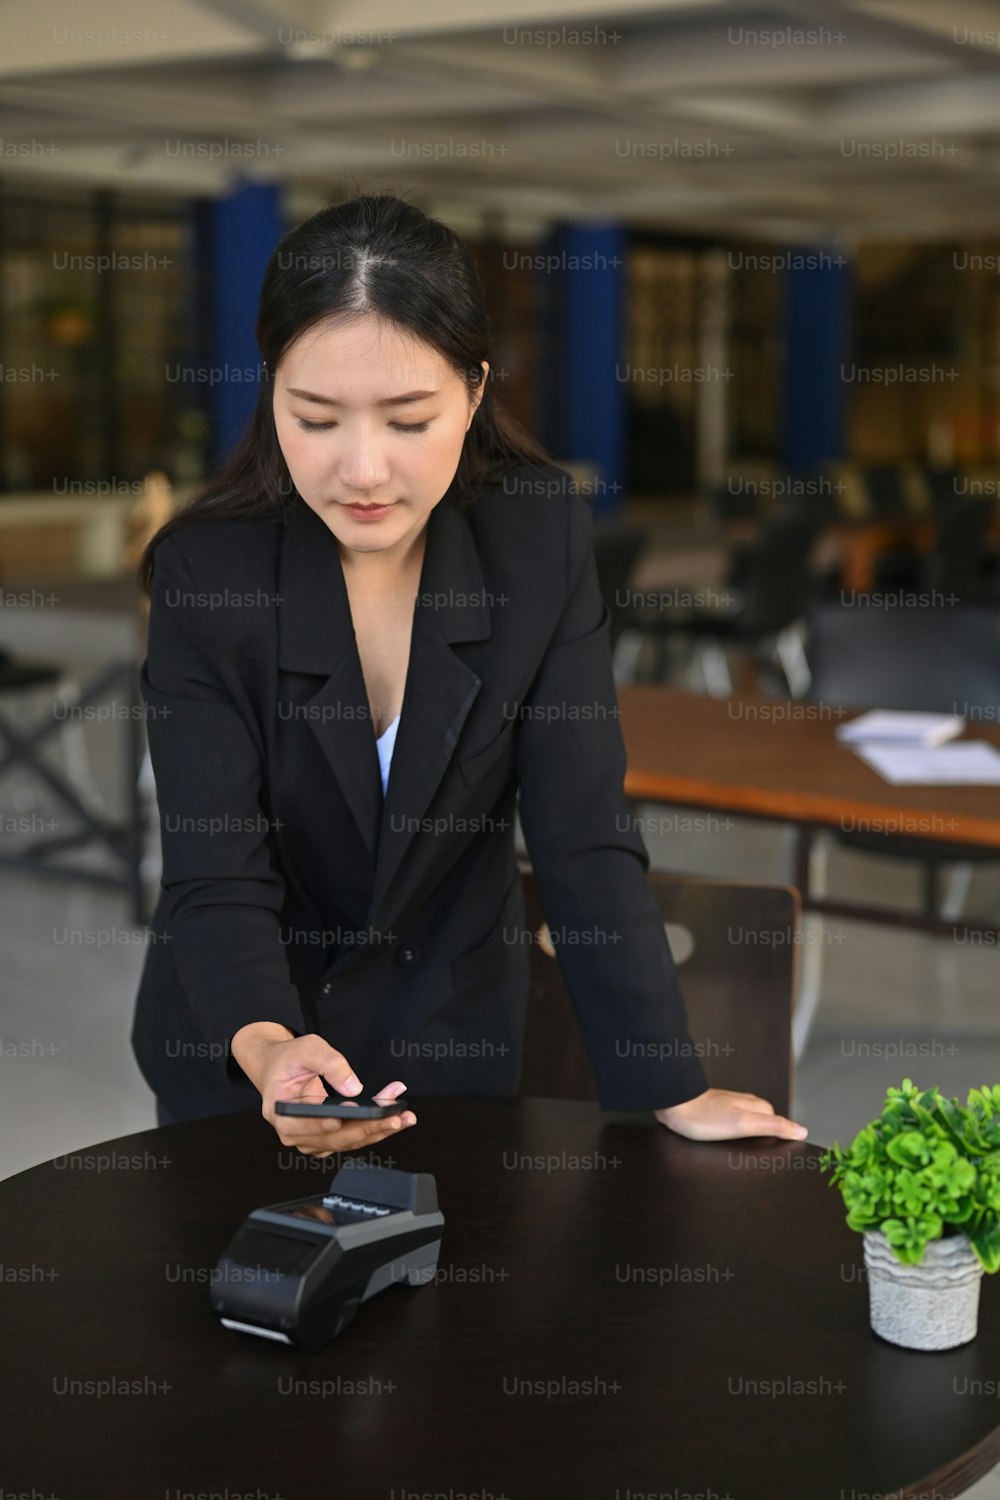 コーヒーショップでの支払いにスマートフォンを使用している笑顔のアジア人女性。